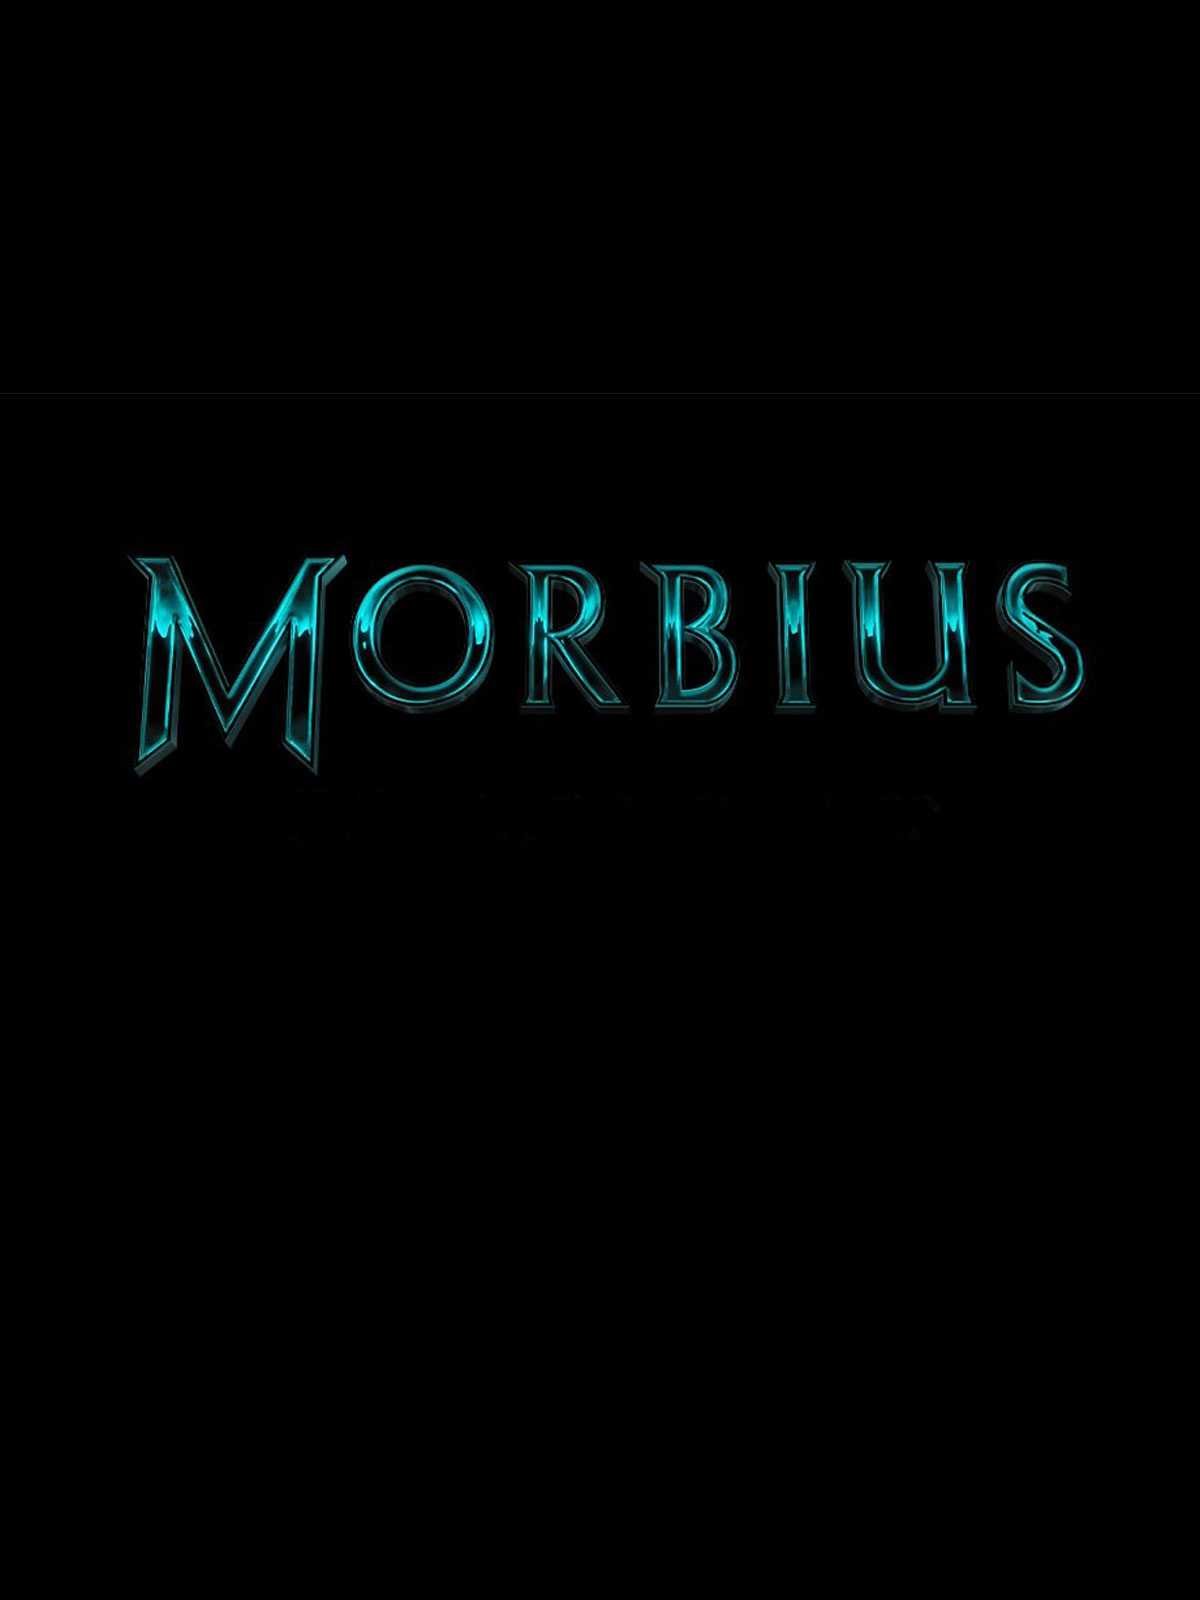 Leto fala de Morbius!